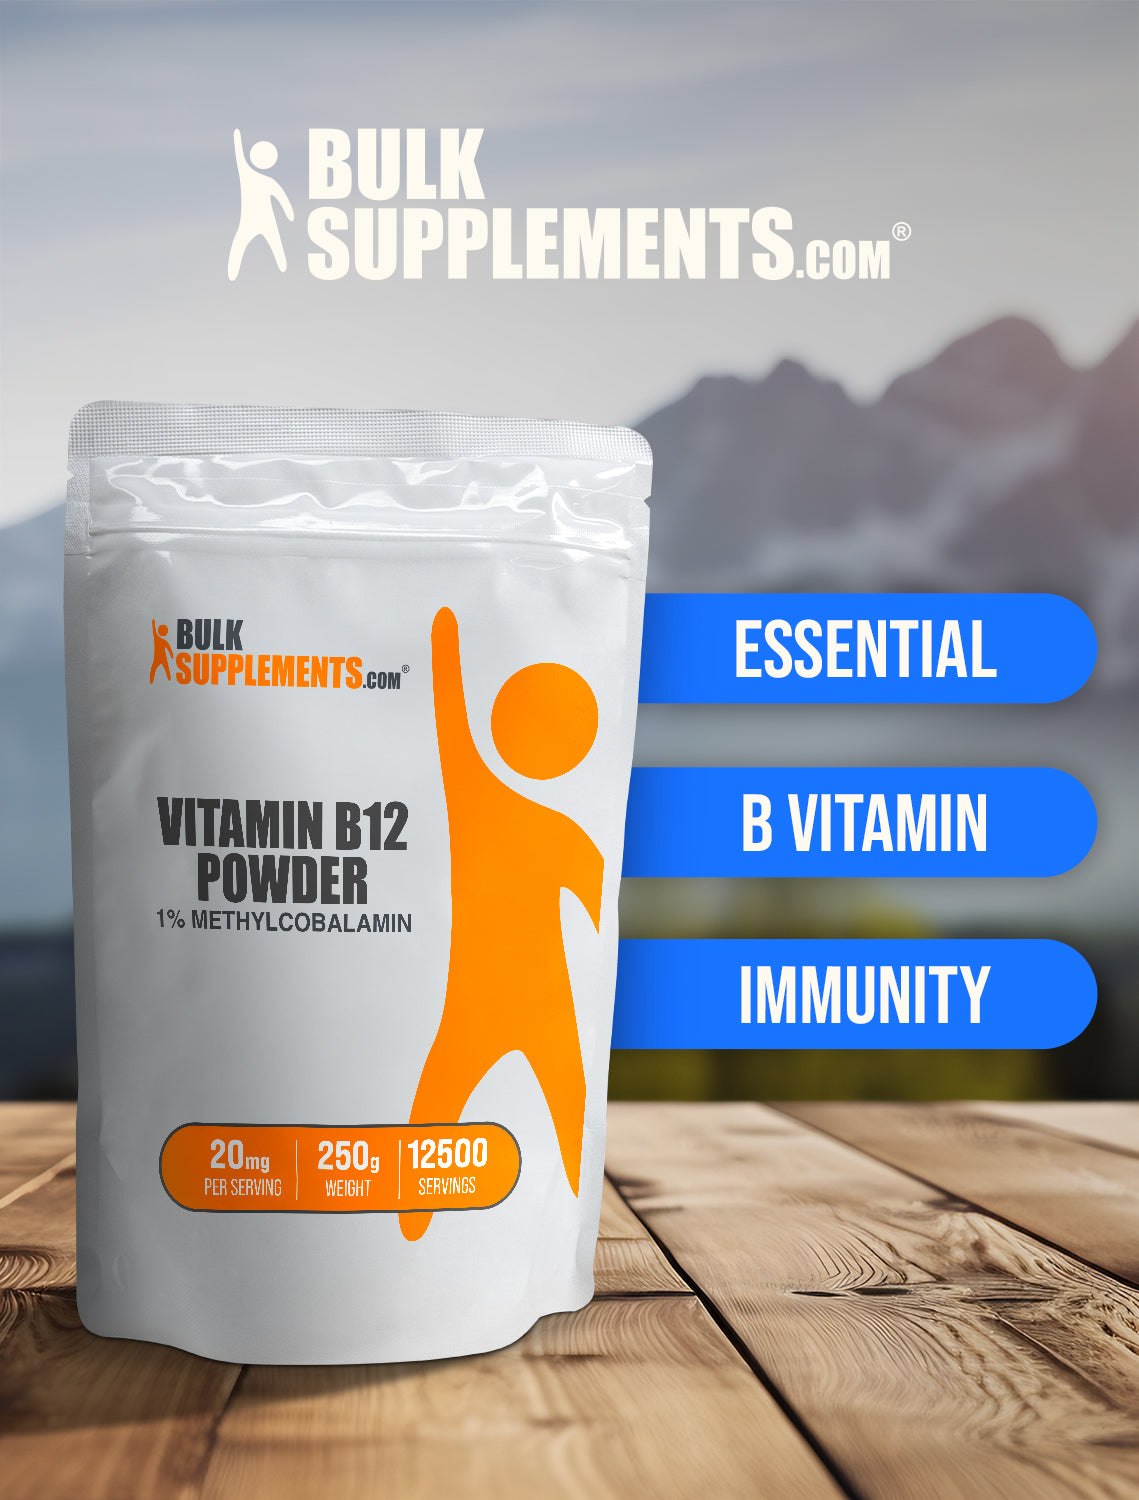 Vitamin B12 1% Methylcobalamin powder keyword image 250g